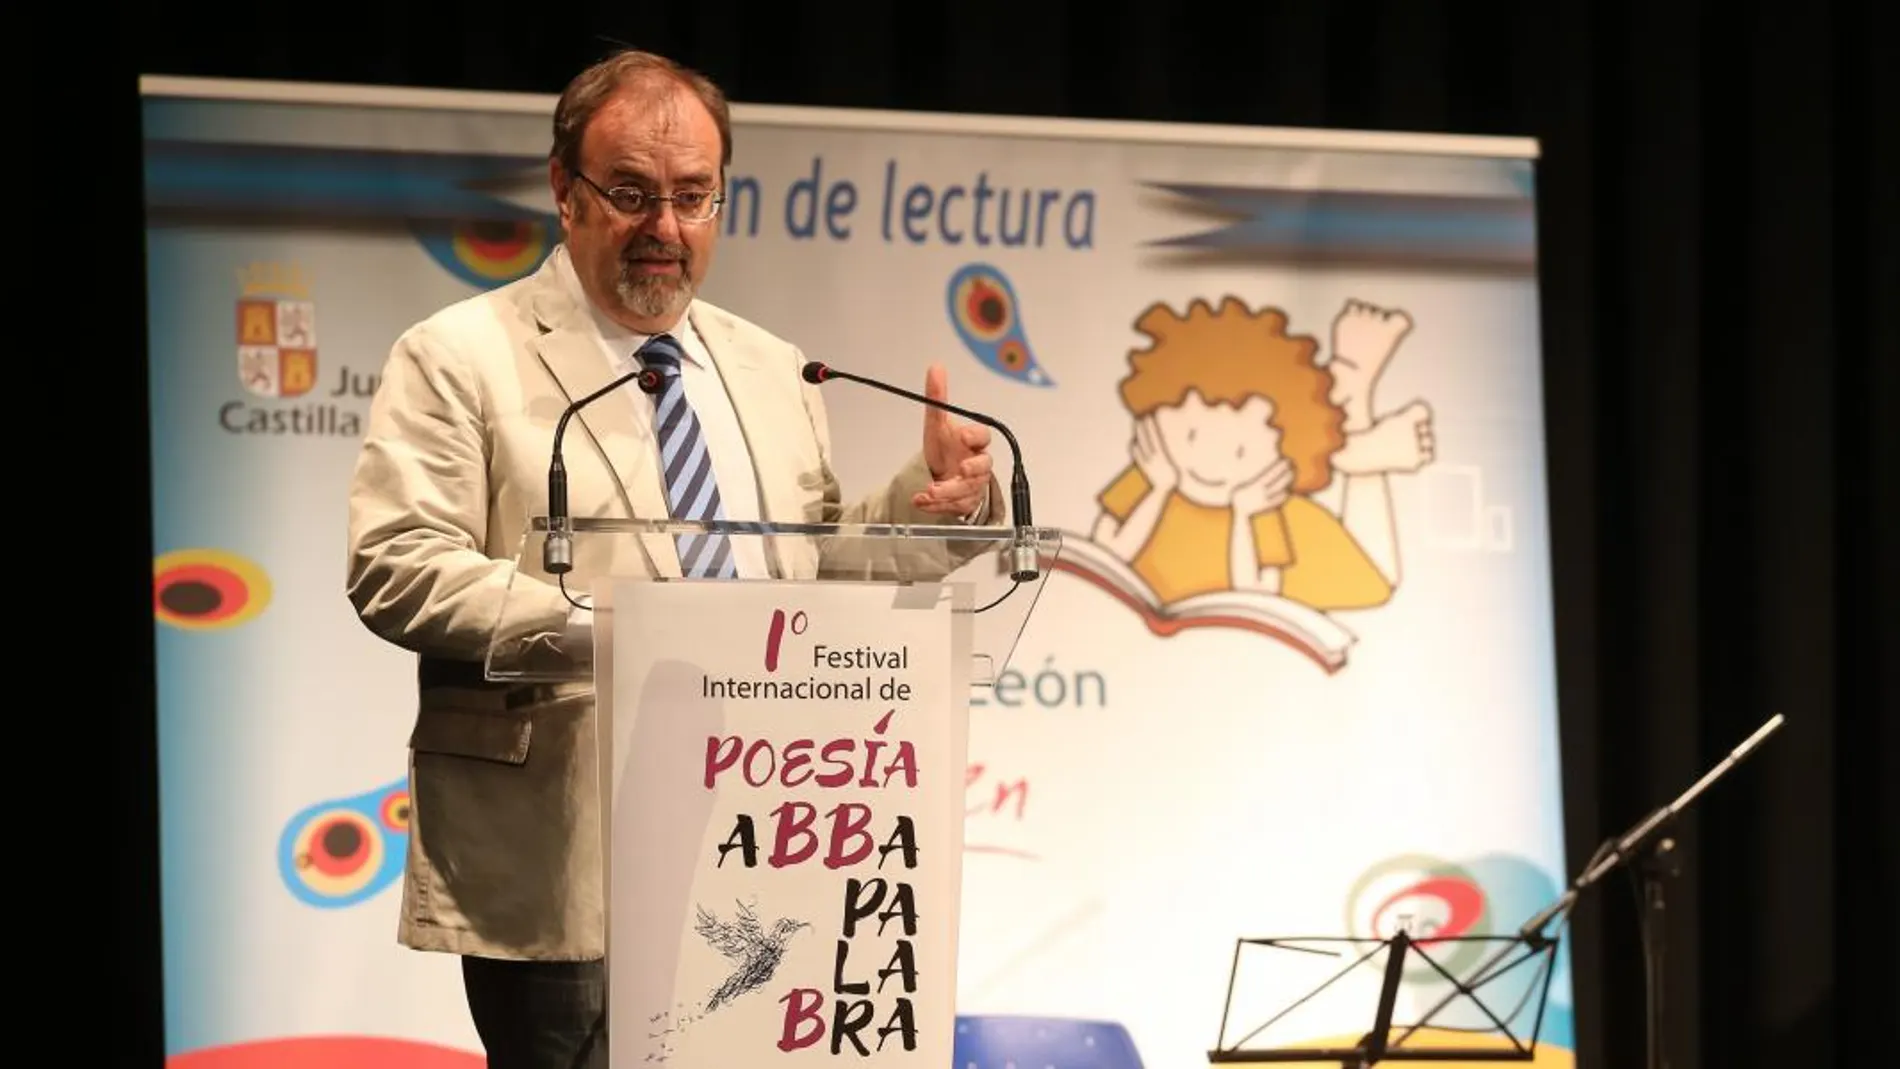 El consejero de Educación, Fernando Rey, asiste al I Festival Internacional de Poesía Abbapalabra en Castilla y León